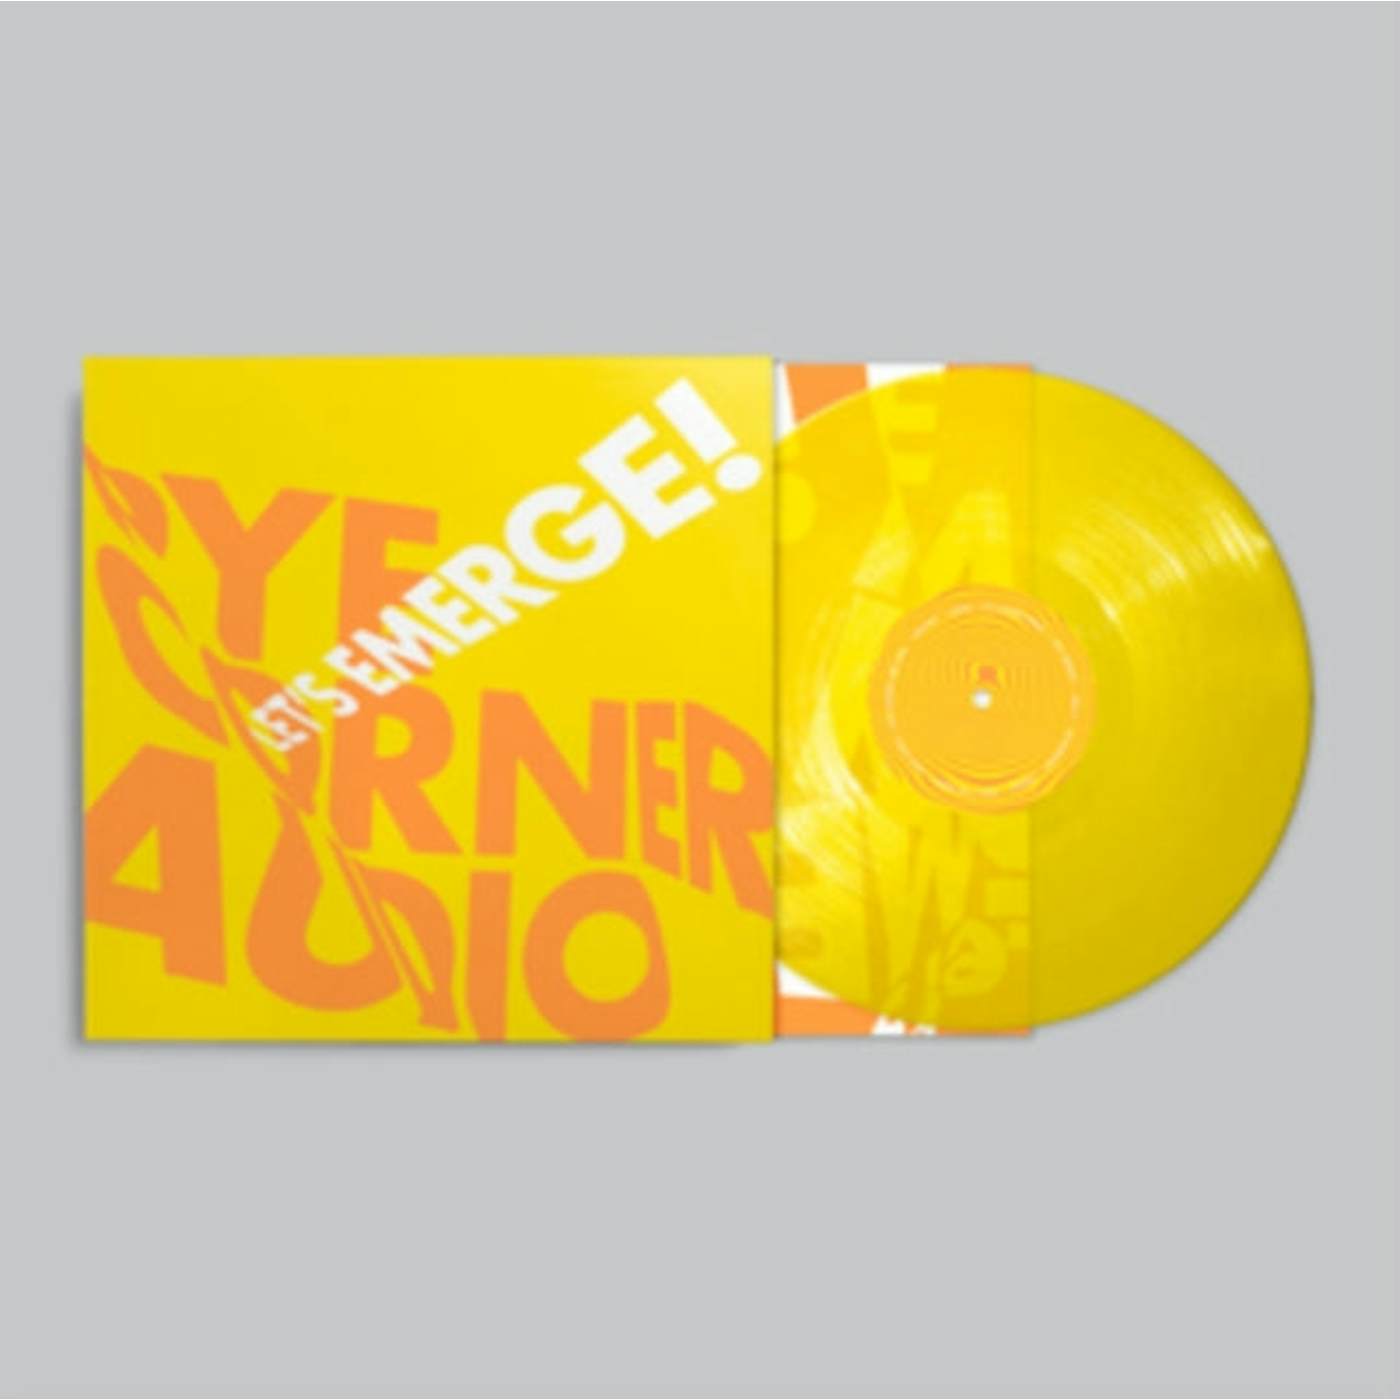 Pye Corner Audio LP Vinyl Record - Let's Emerge!